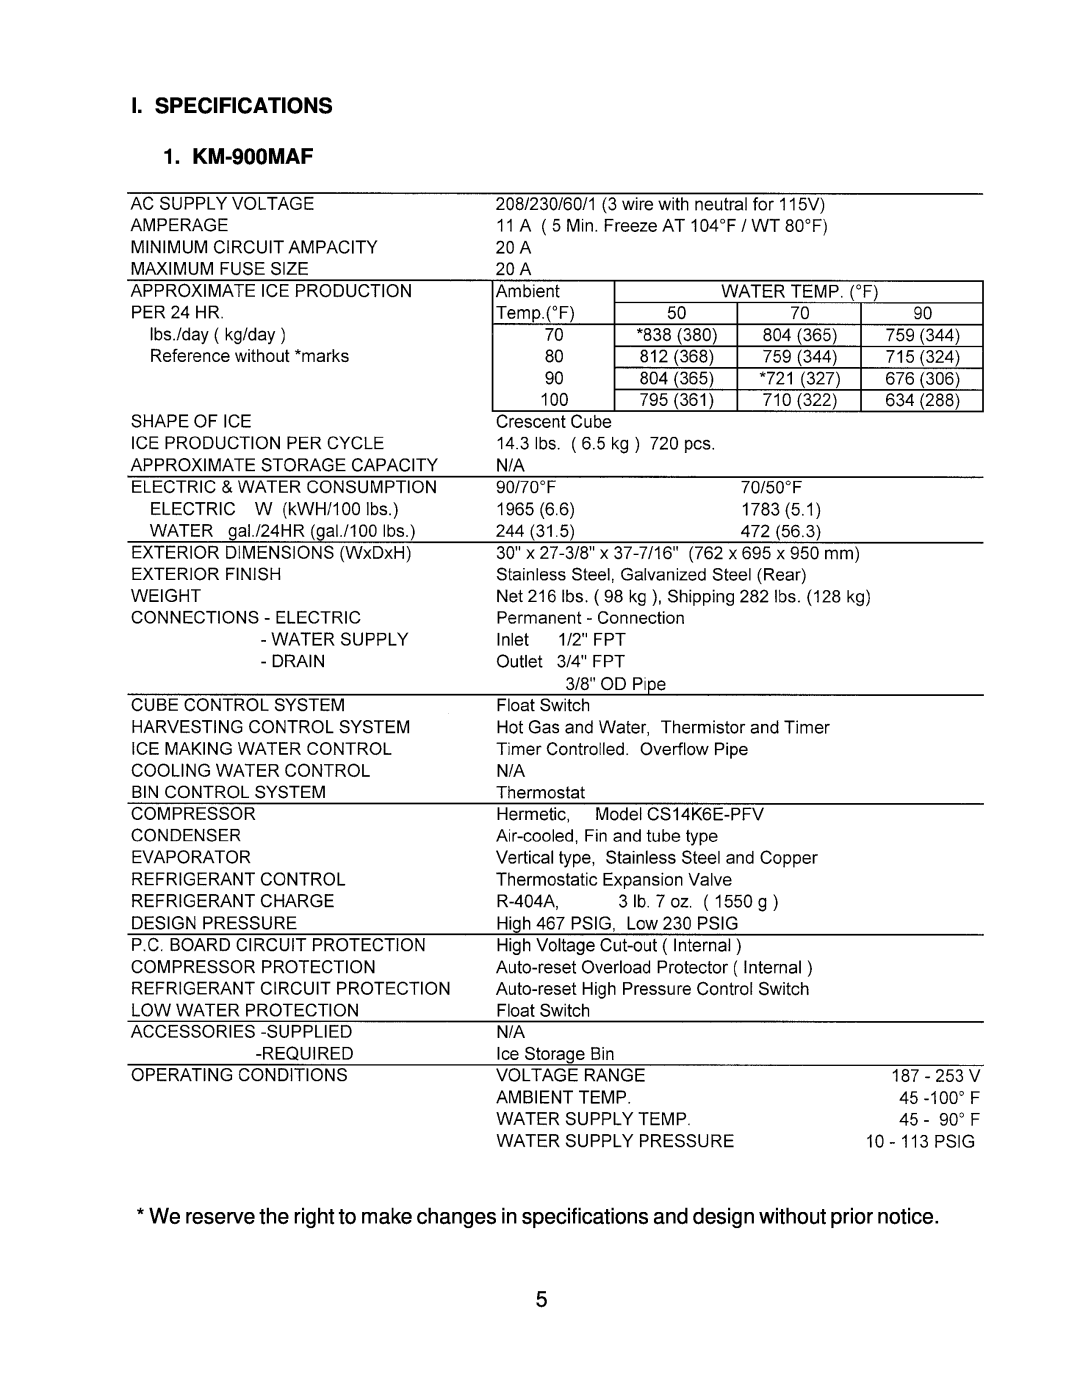 Hoshizaki KM-900MWF, KM-900MRF3 service manual I. SPECIFICATIONS 1. KM-900MAF 